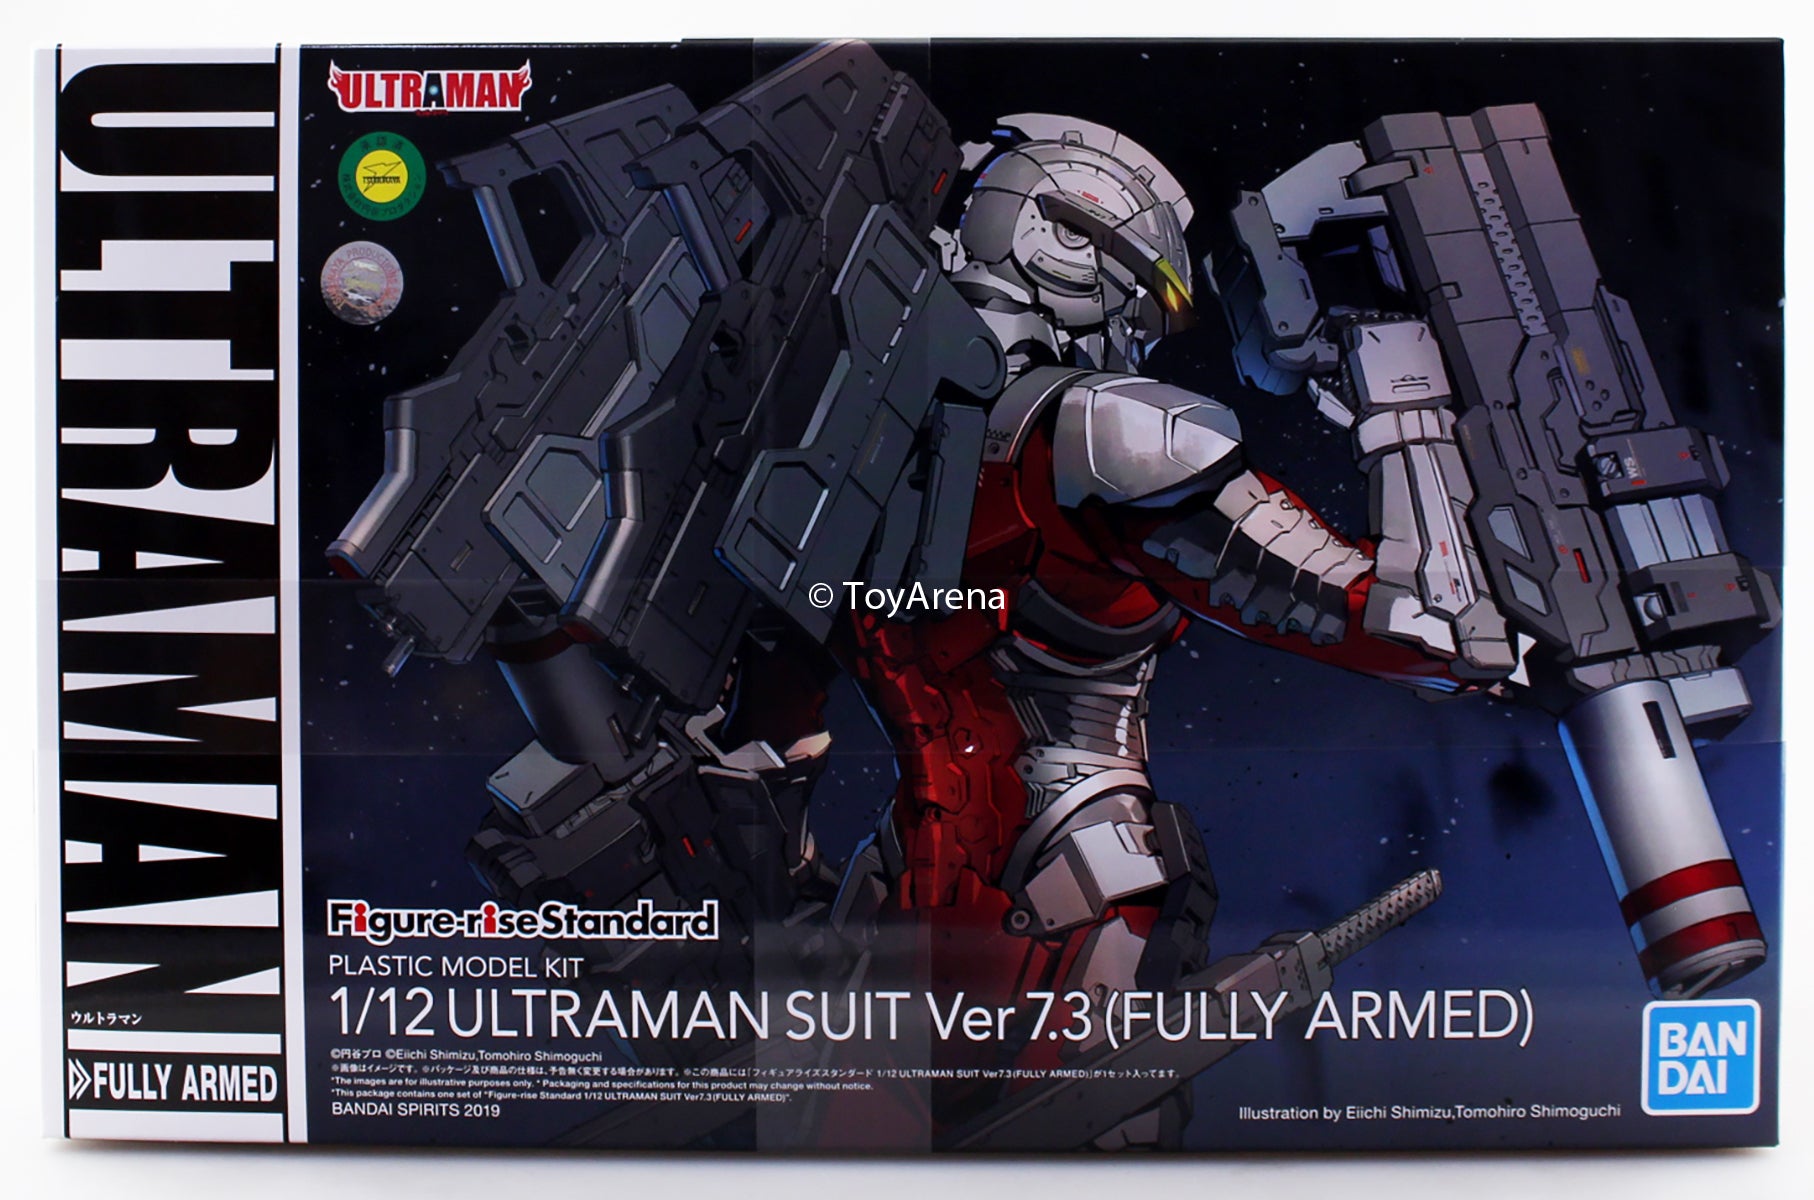 Figure-Rise Standard Ultraman Fully Armed (Ver 7.3) Plastic Model Kit